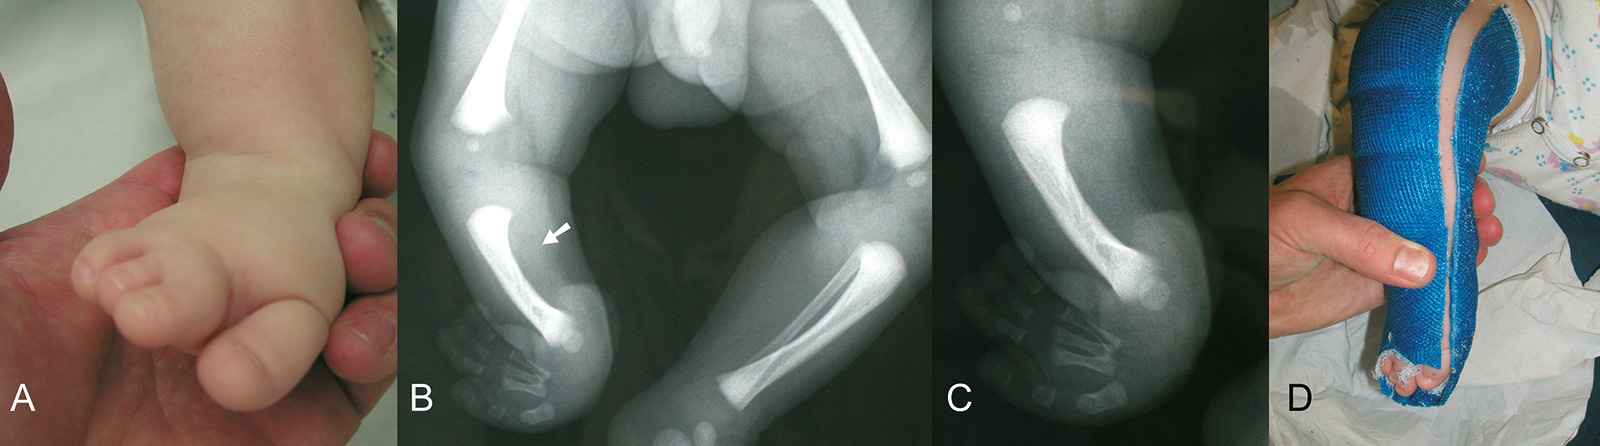 Abb. 4-45: Fibulaaplasie rechts (A-C), Anlage eines Gipses zur Korrektur der Pronationsfehlstellung nach der Geburt (D)